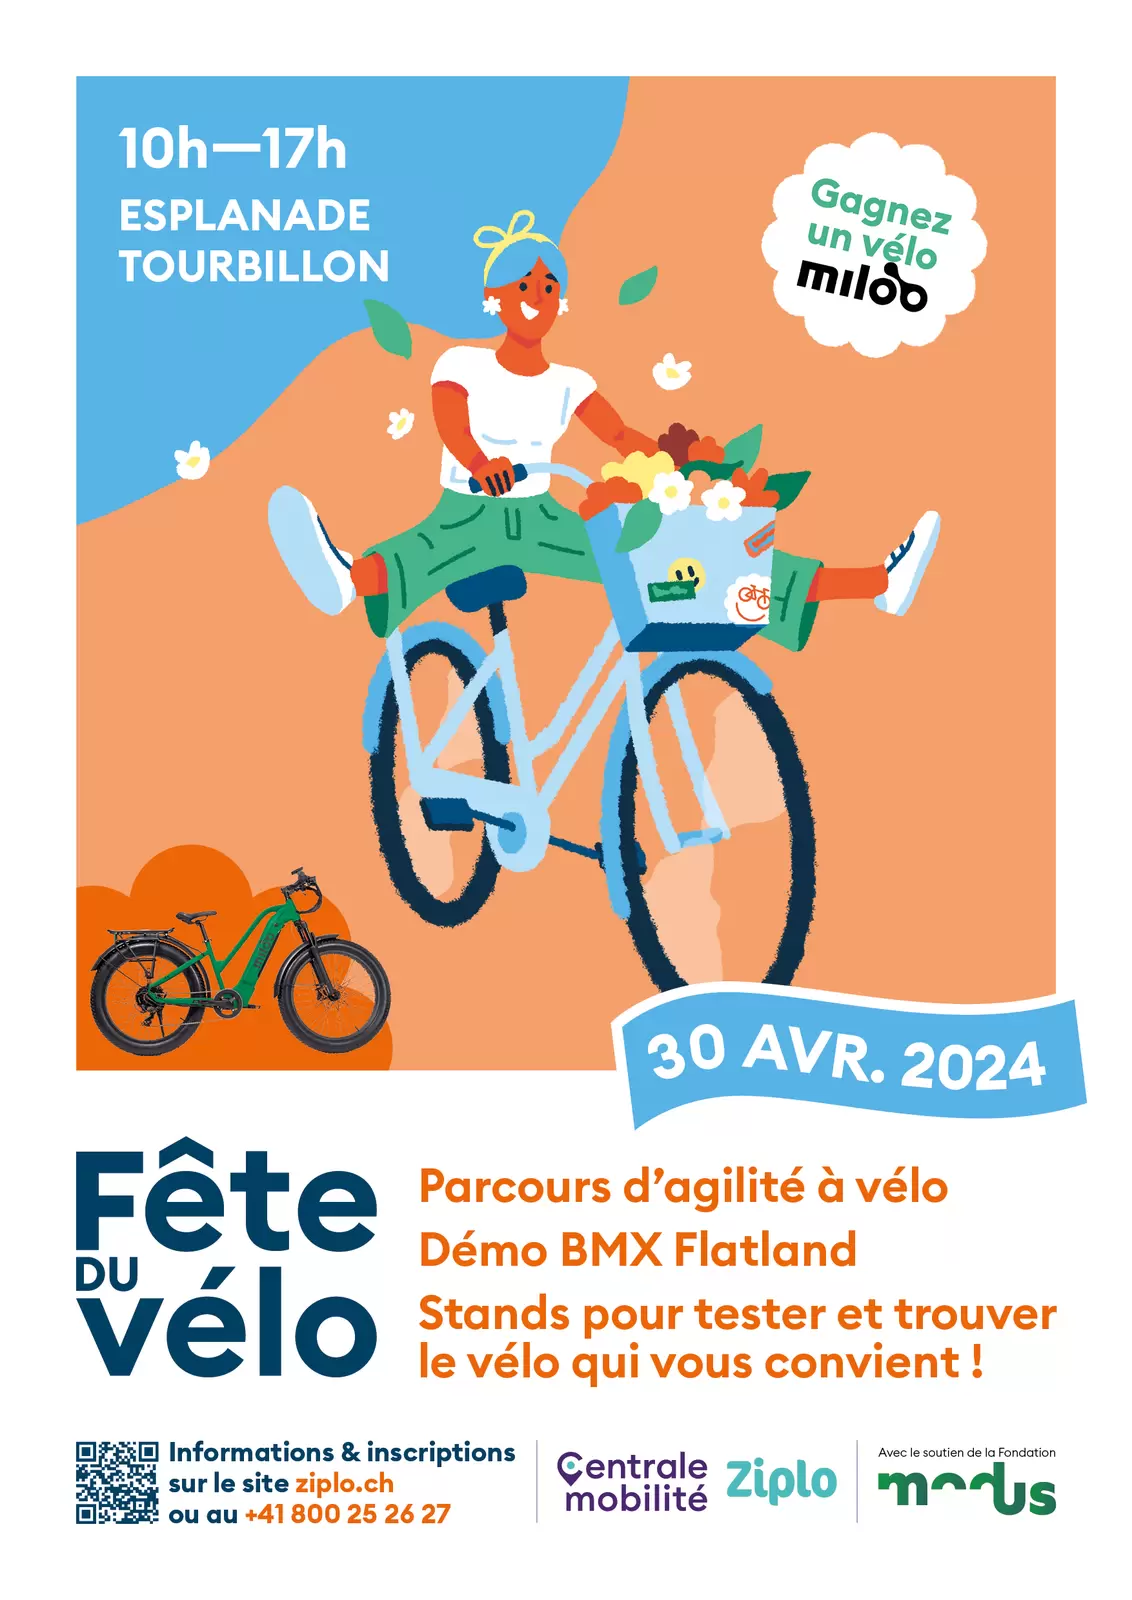 Fête du Vélo - ZIPLO / Esplanade Tourbillon 